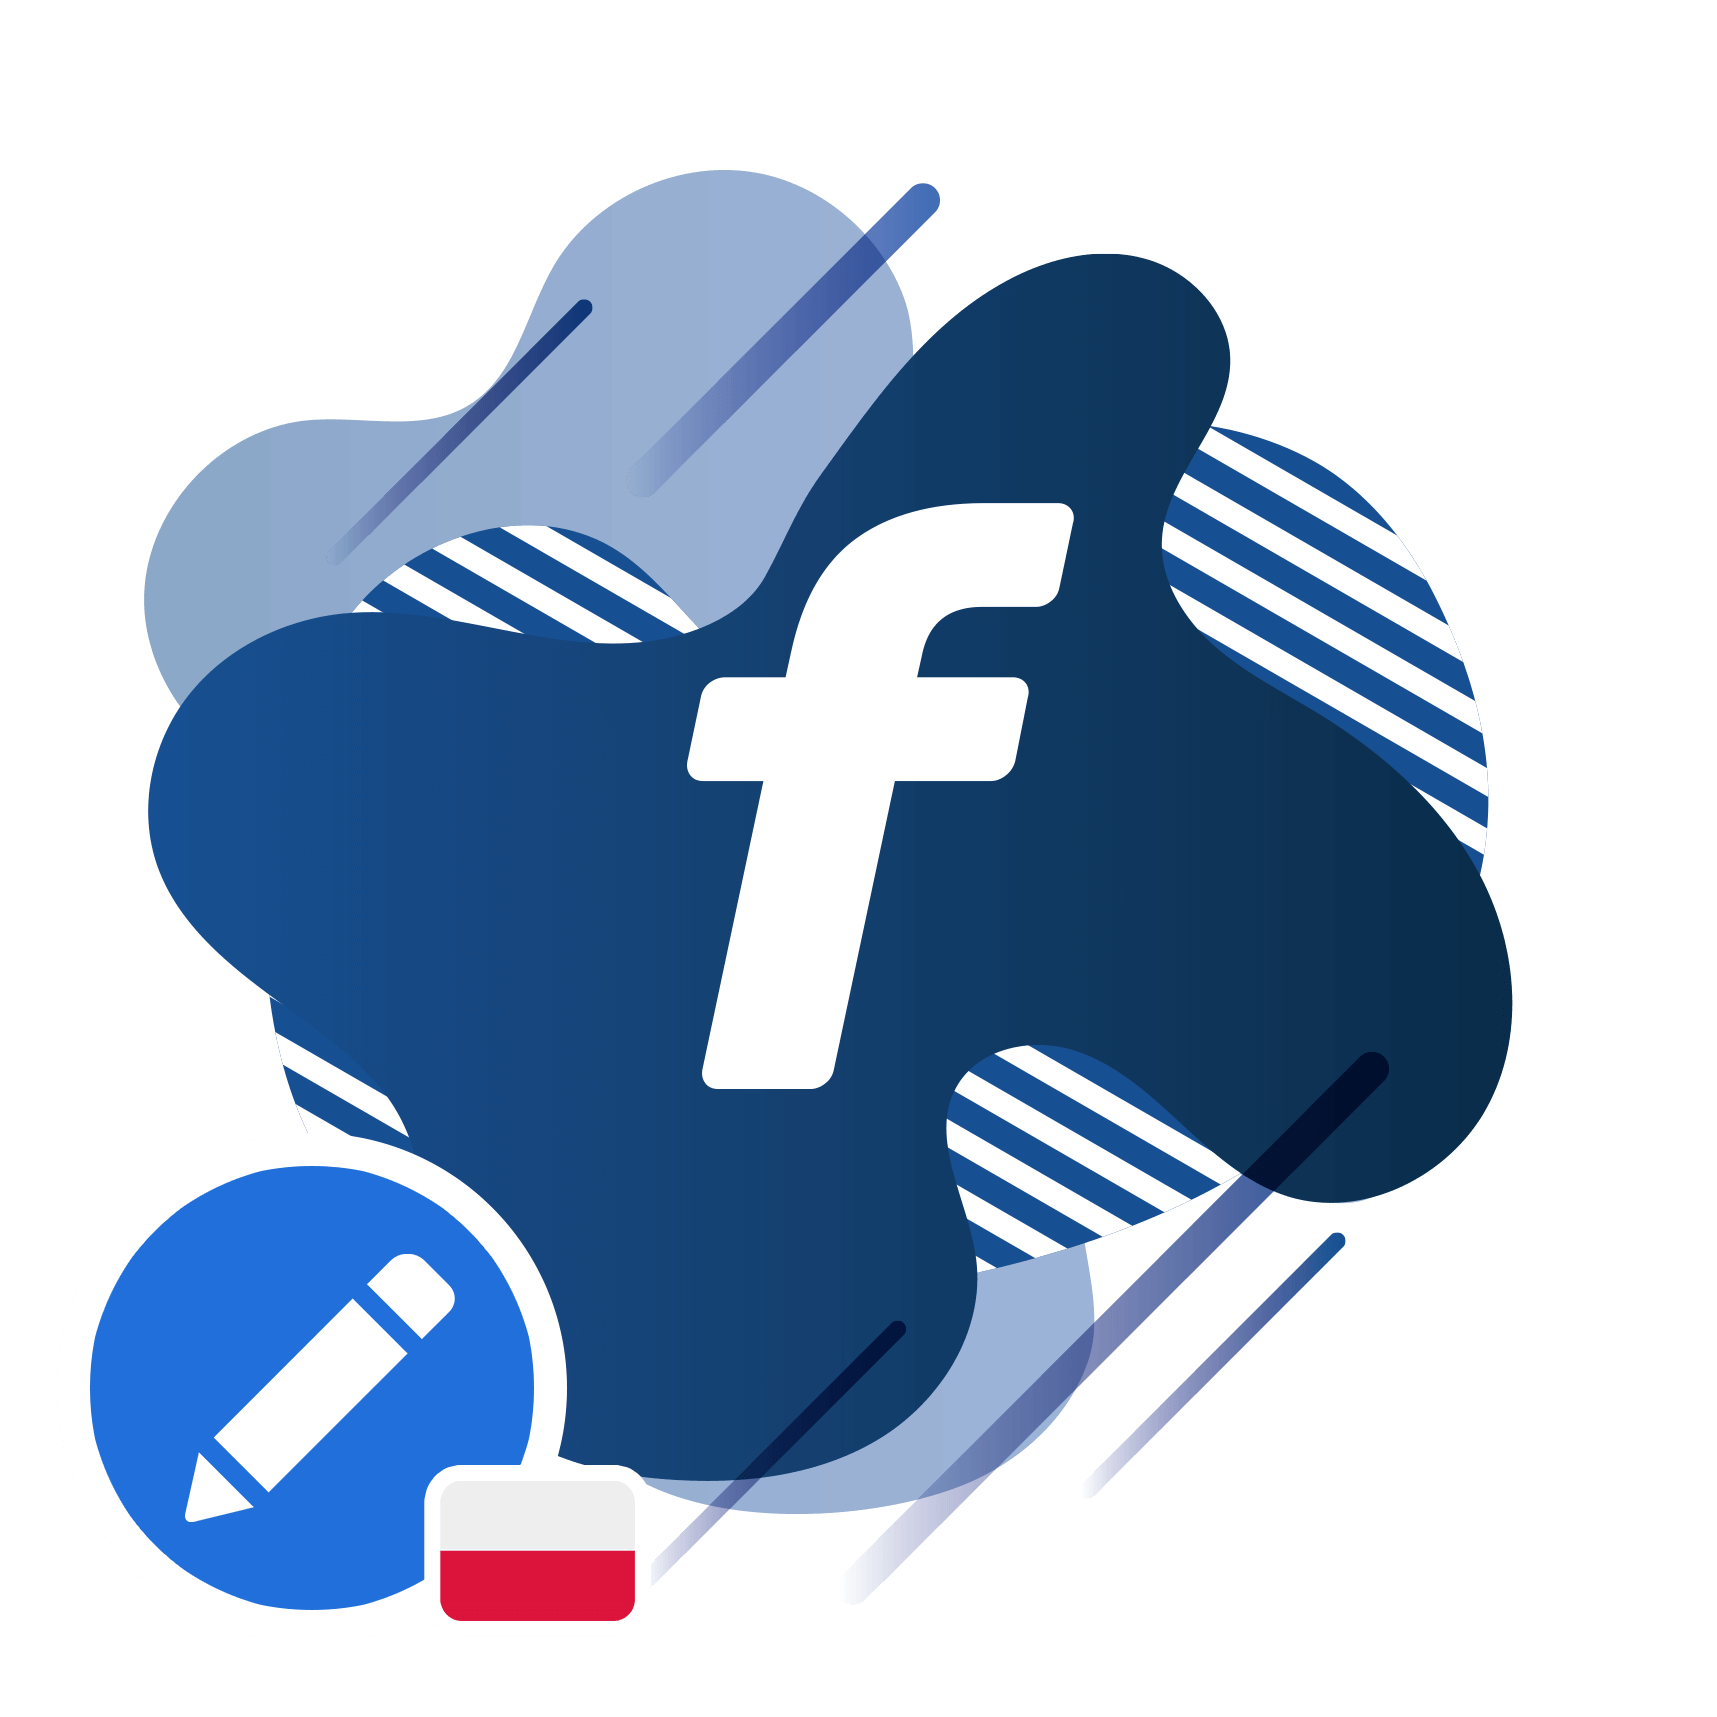 facebook-fanpage-zaproponuj-zmiany